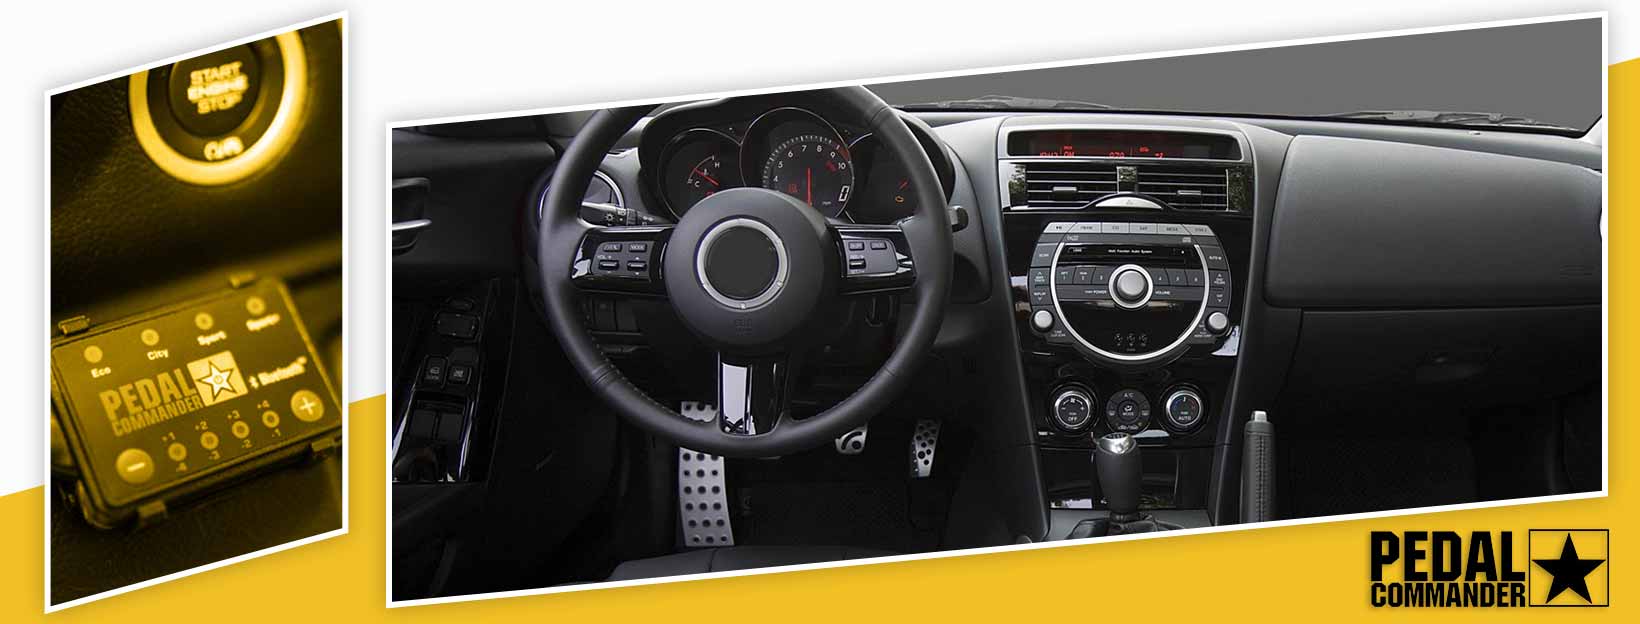 Pedal Commander for Mazda RX8 - interior